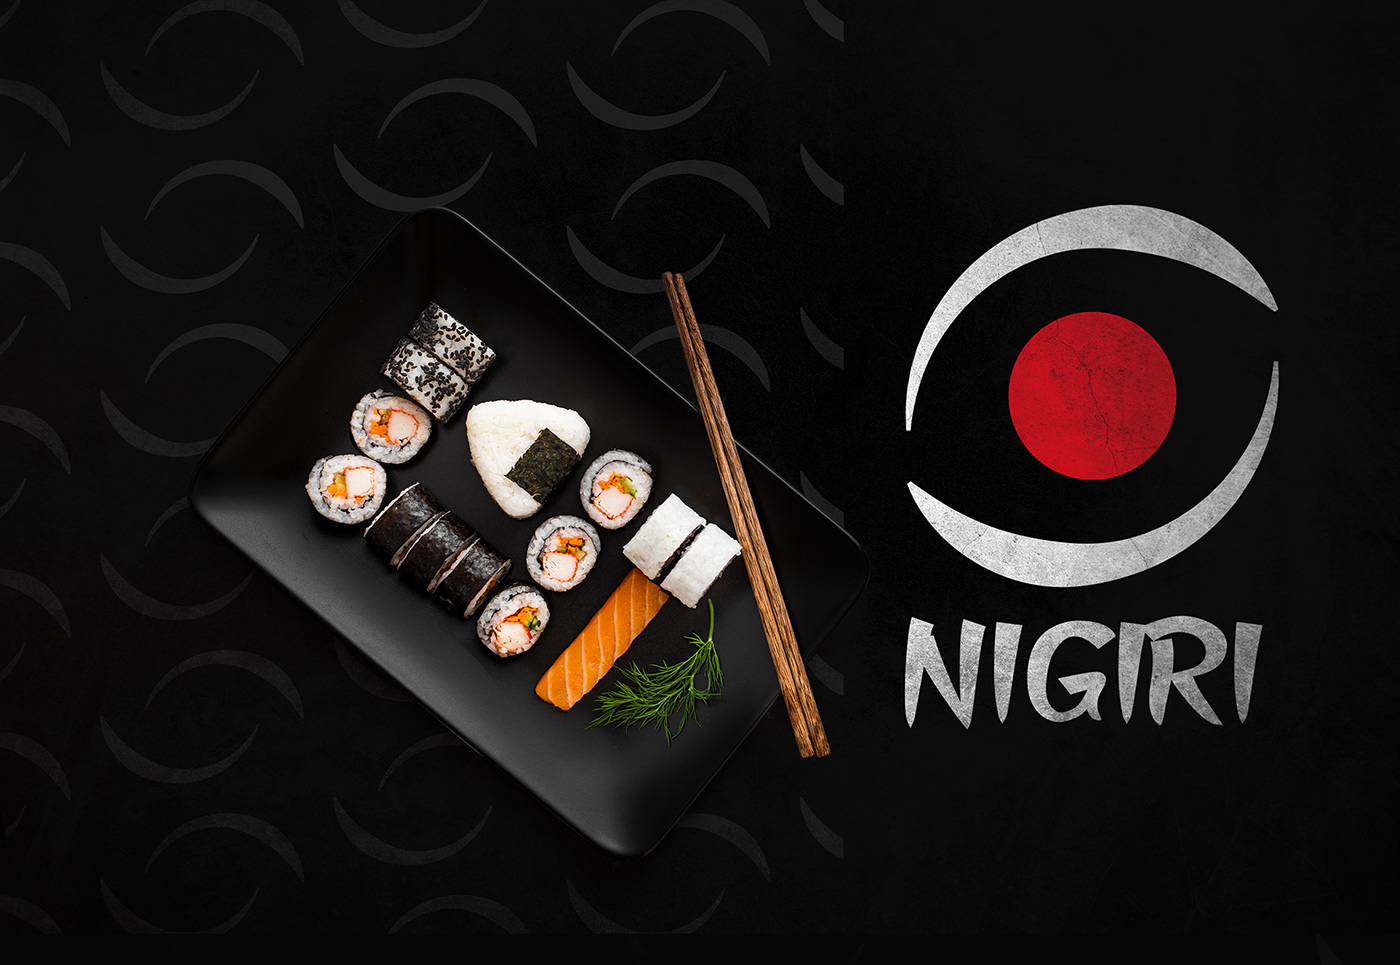 logo nigiri restaurant Sushi